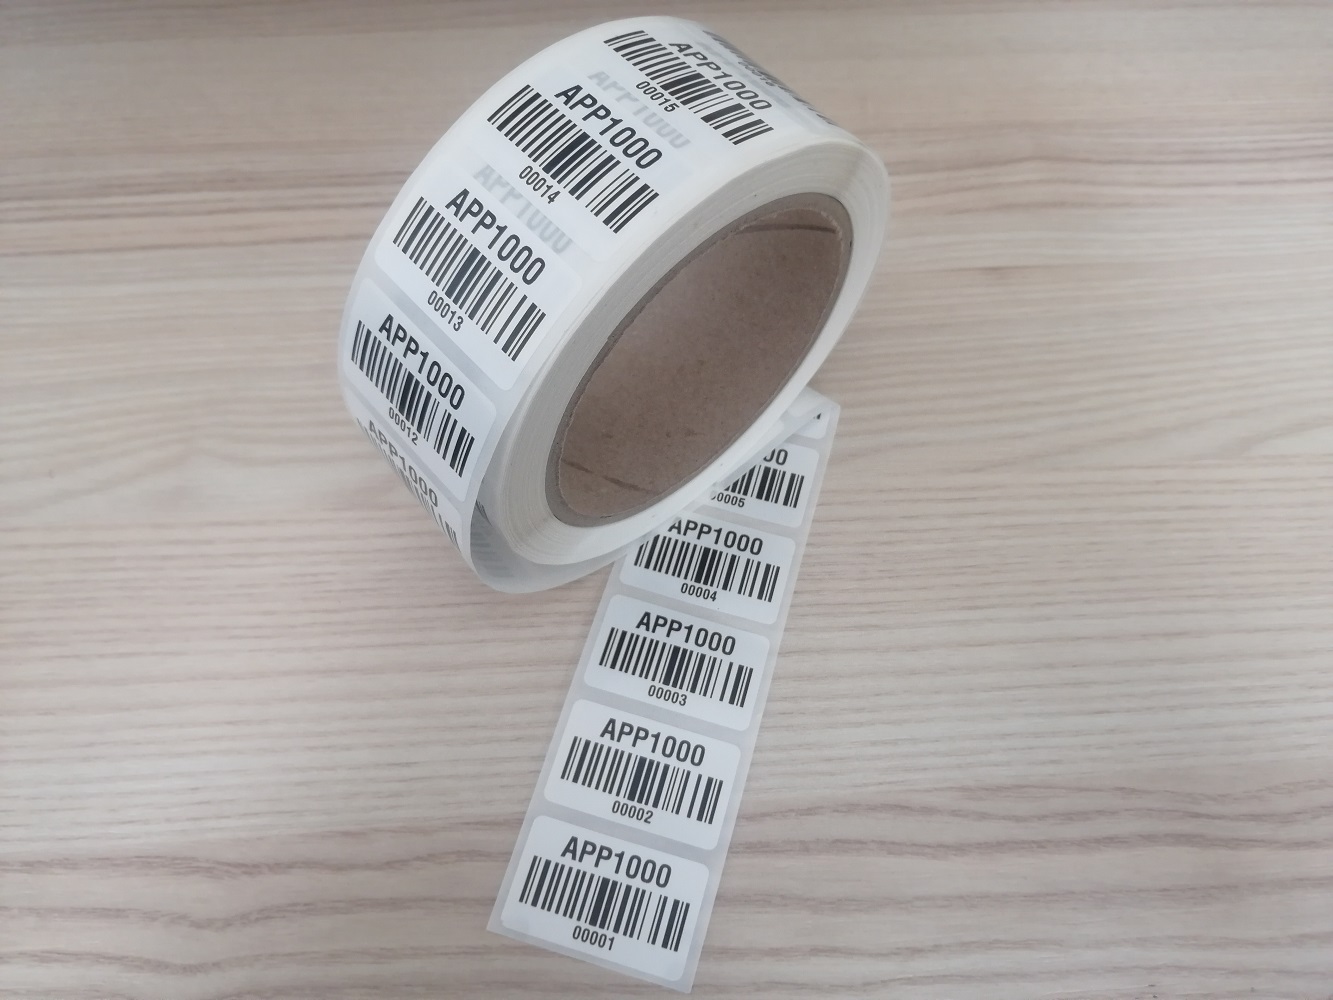 1000 Stück APP1000 Barcode Etiketten 1-1000 für Fluke Gossen Beha Benning